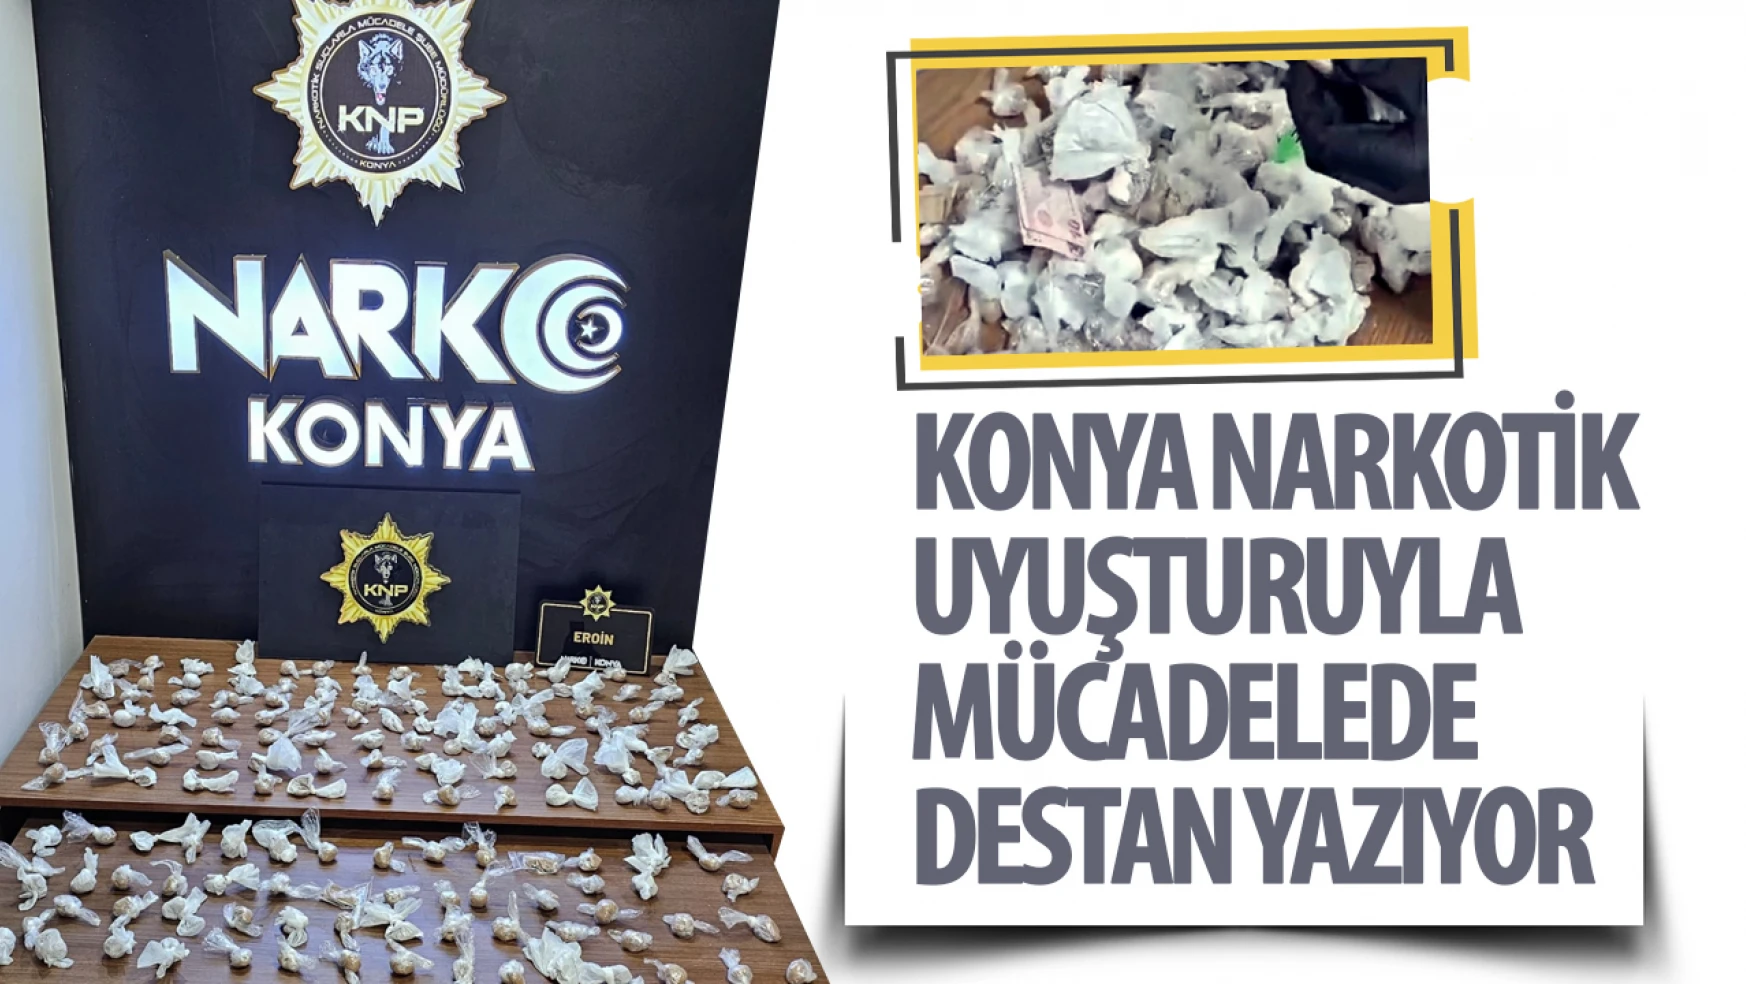 Konya'da uyuşturucu operasyonları hız kesmiyor: 1 kilodan fazla uyuşturucu madde ele geçirildi!